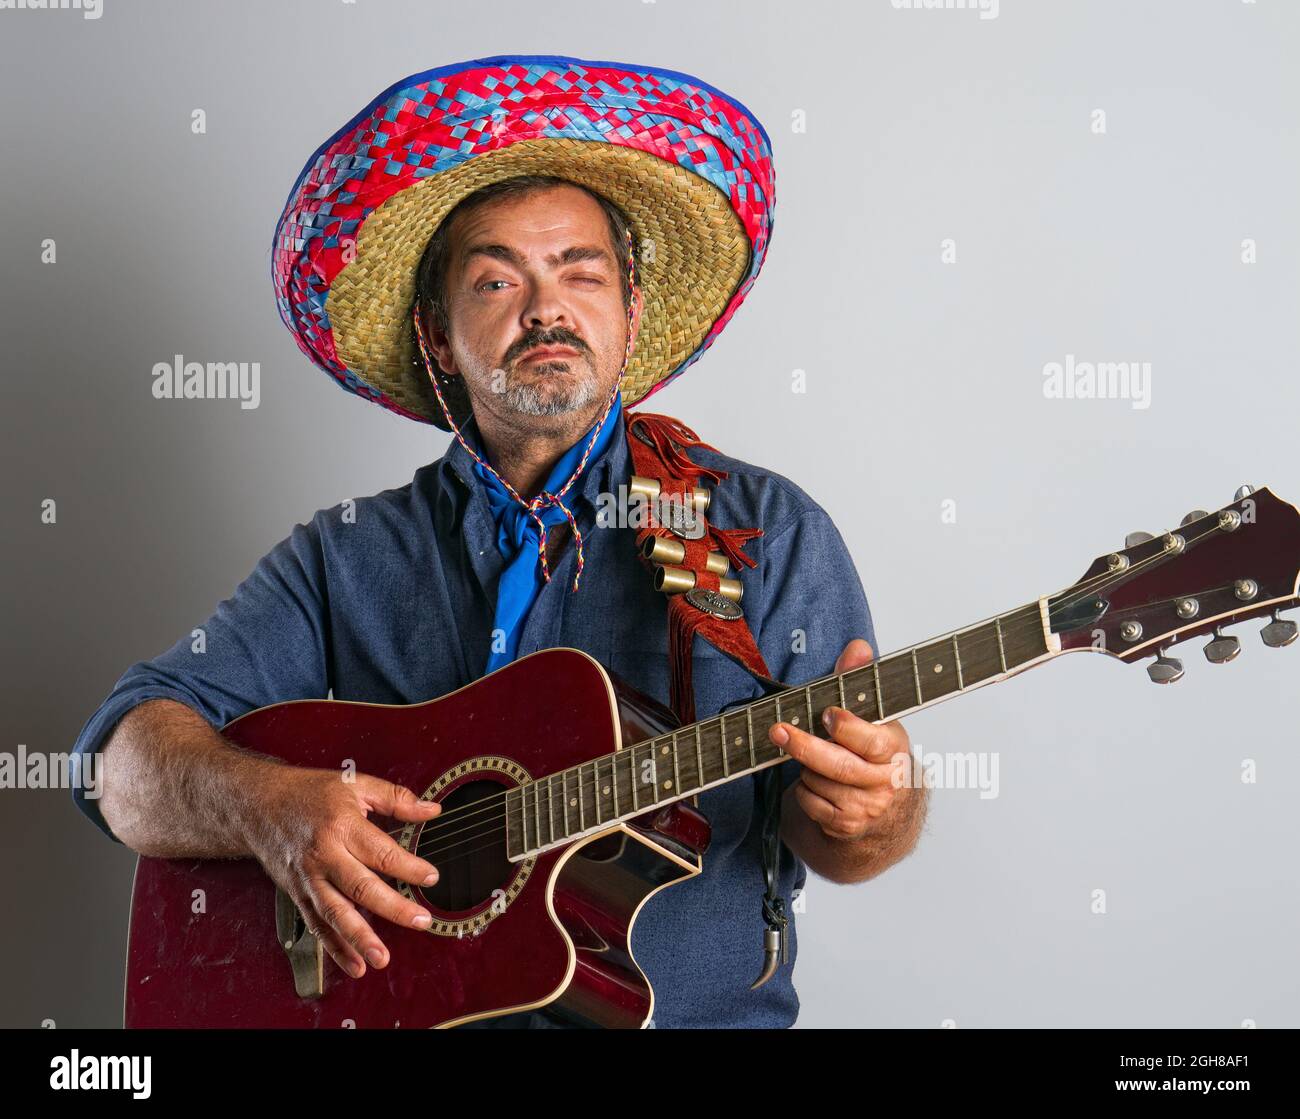 Un homme mexicain émotif adulte dans la hauteur nationale de sombrero joue de la guitare sur fond gris Banque D'Images